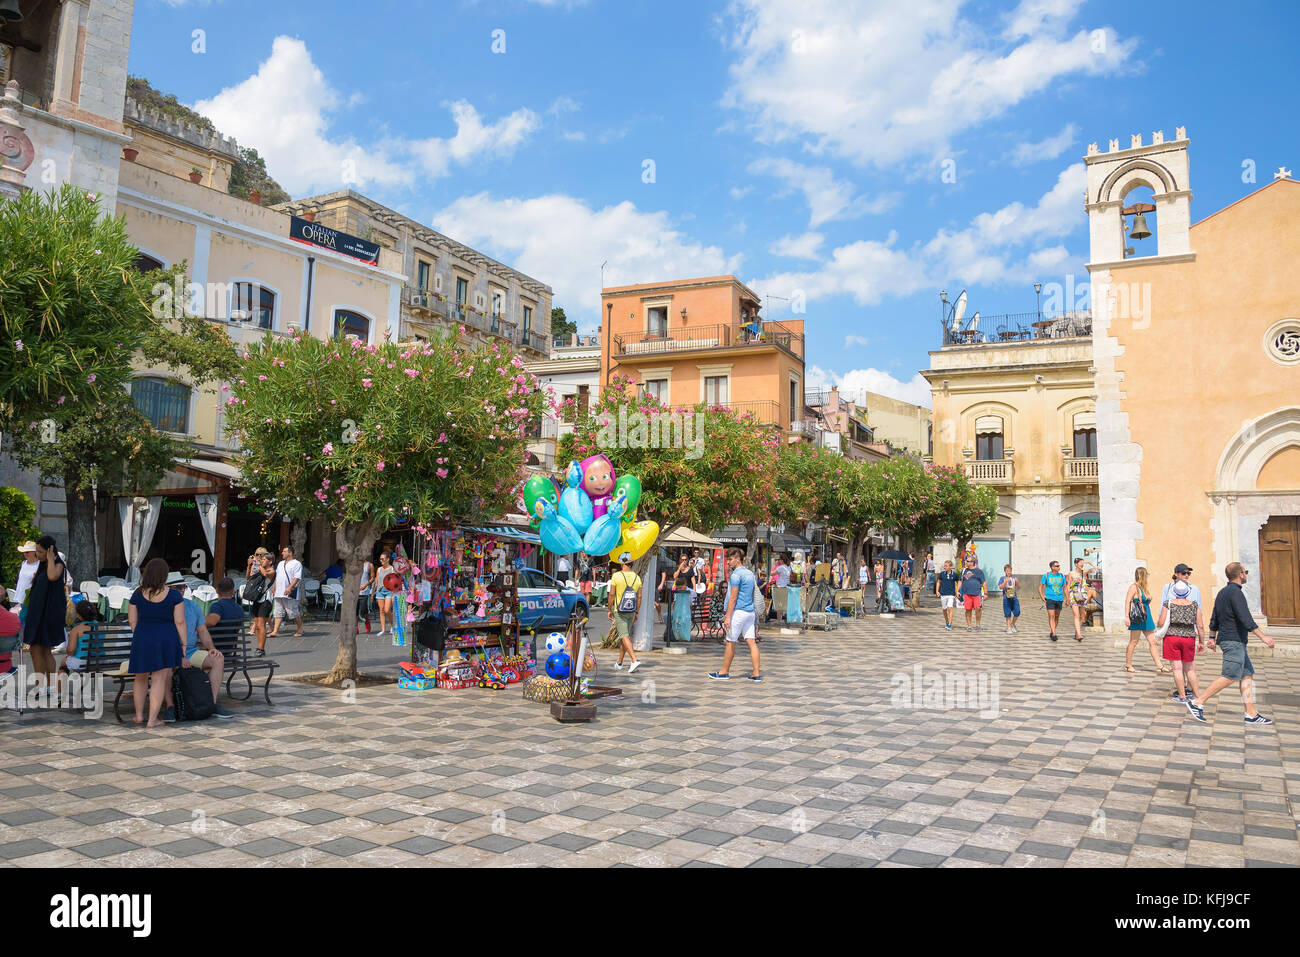 Taormina, Sizilien, Italien - 21, 2017 August: Touristen besuchen Piazza 9 Aprile - berühmten Marktplatz mit vielen Geschäften und Restaurants. Stockfoto